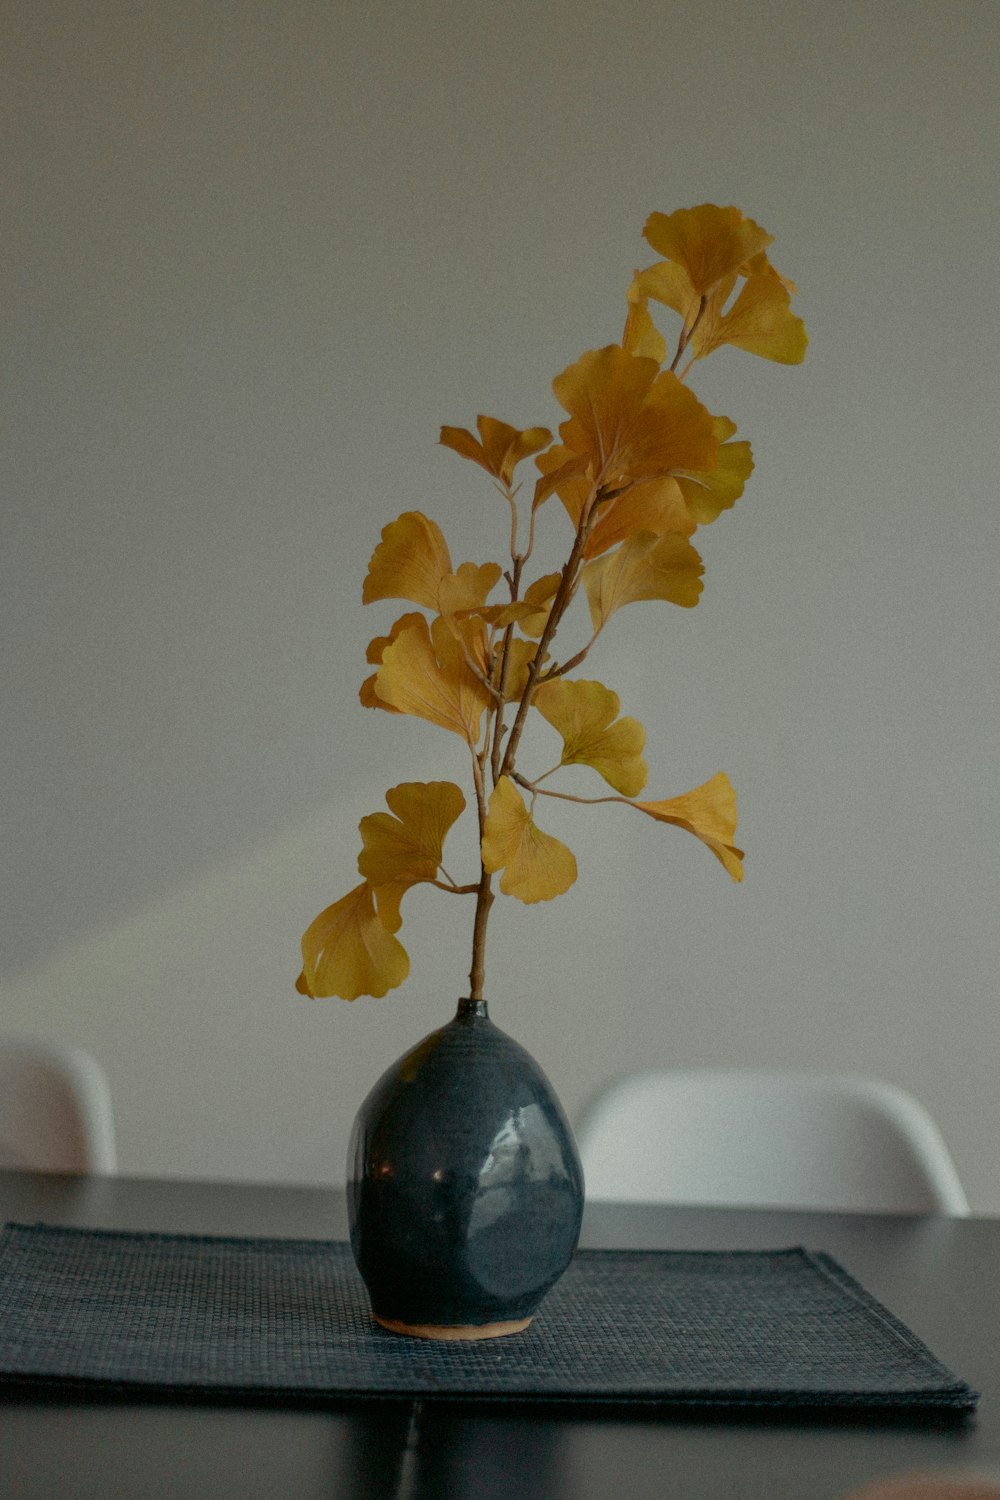 青いガラスの花瓶に黄色い葉